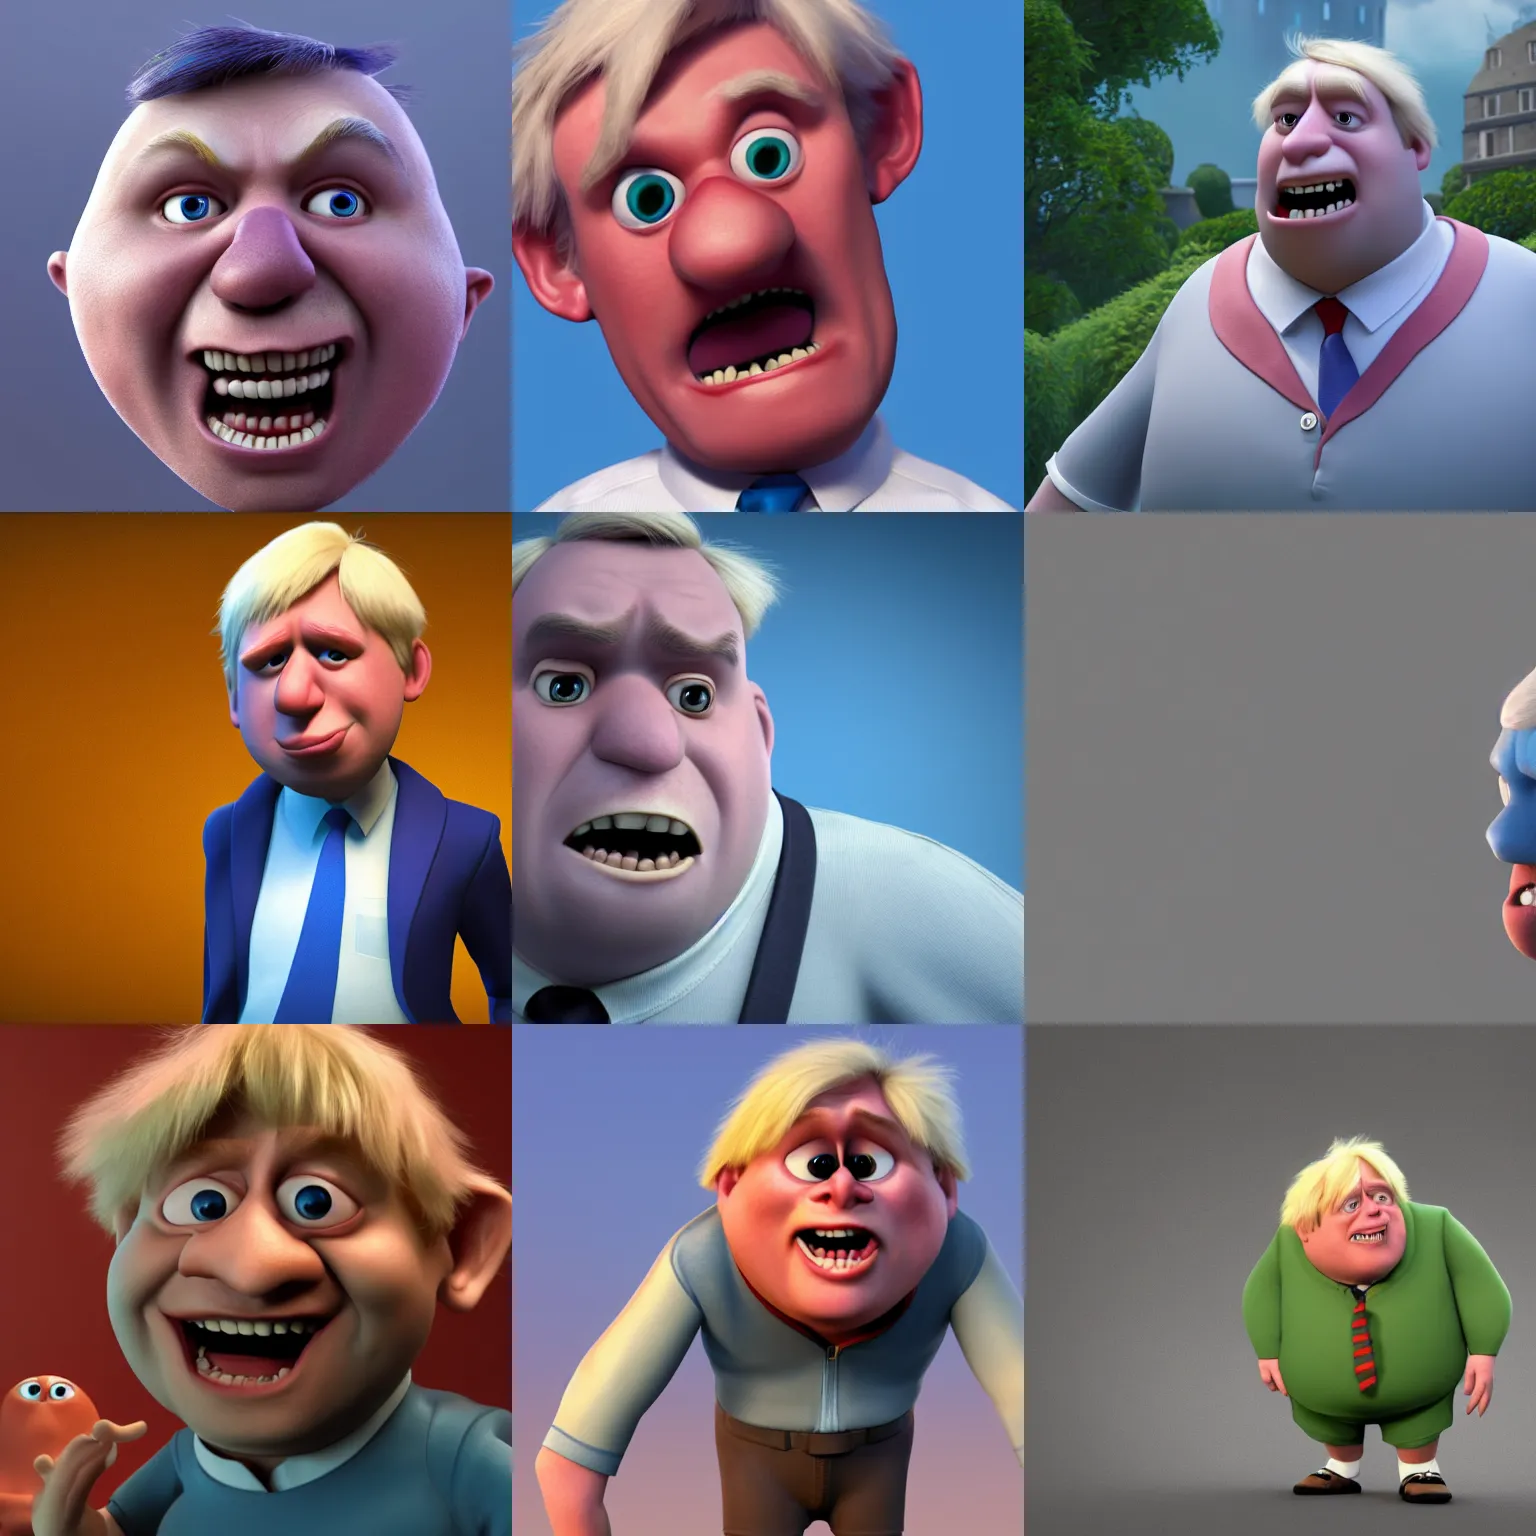 Prompt: Boris Johnson, still from pixar movie, high quality 3d render, movie, Pixar, Renderman, 4k, artstation